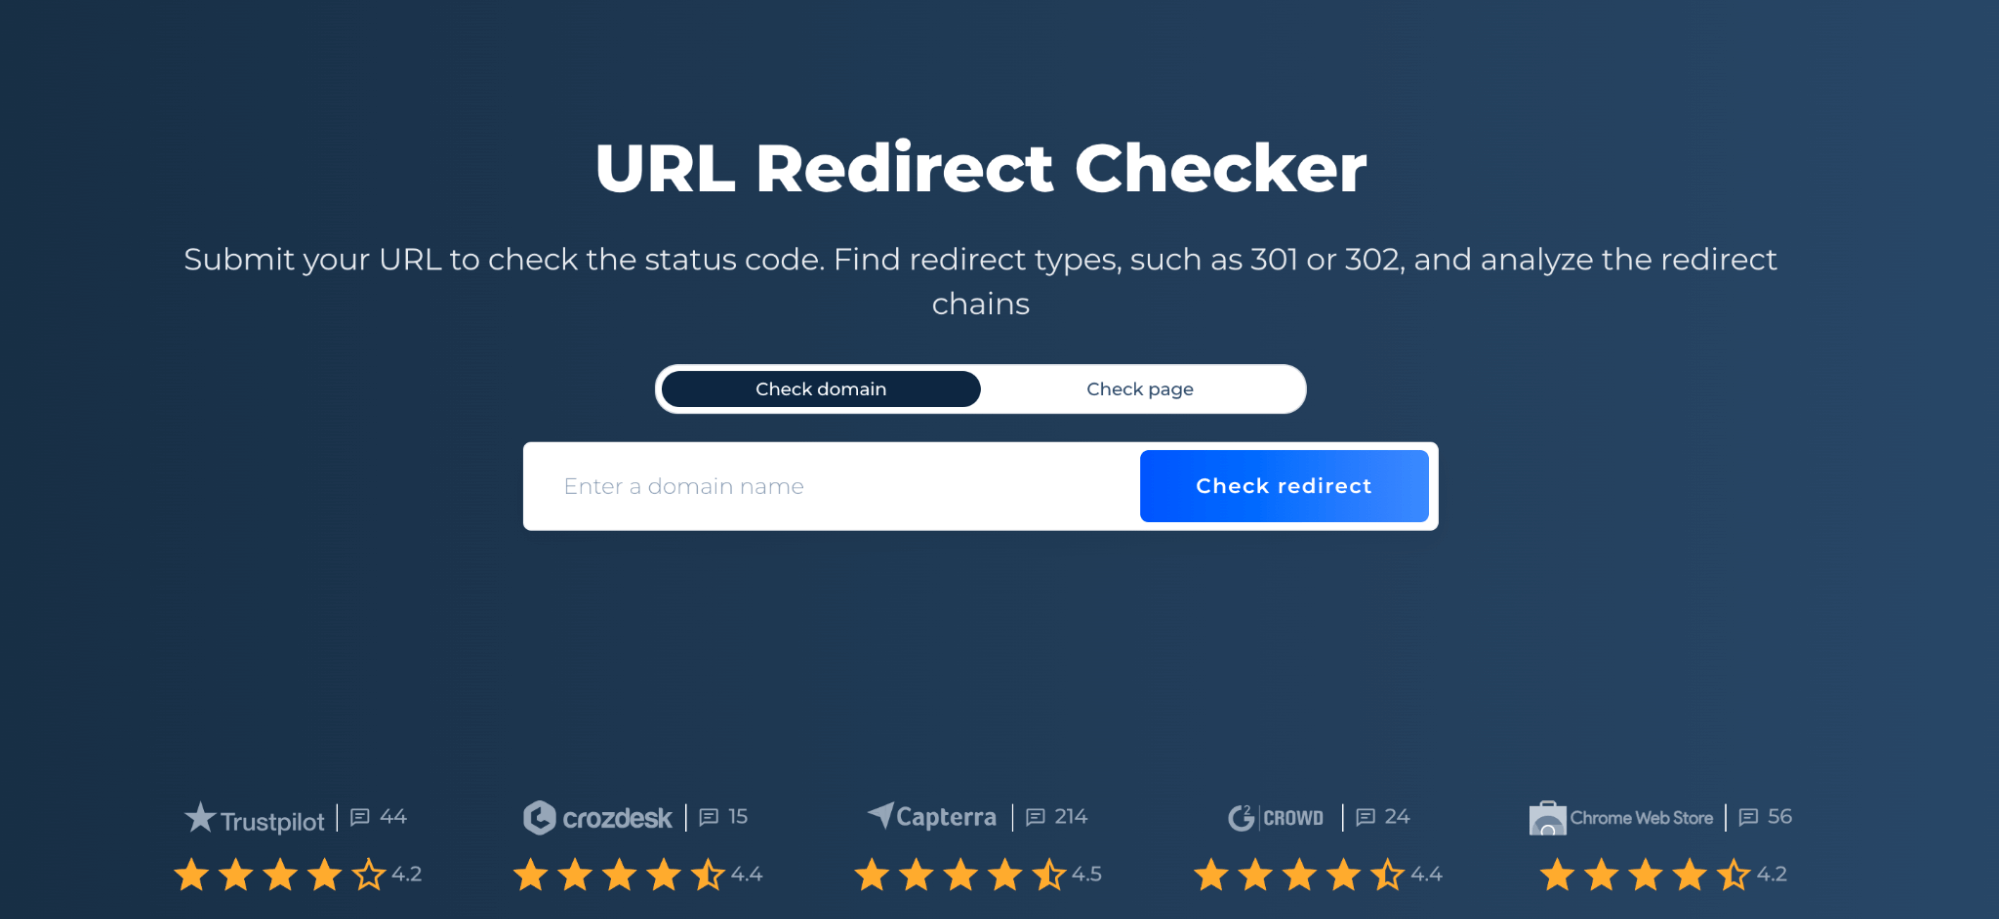 URL Redirect Checker